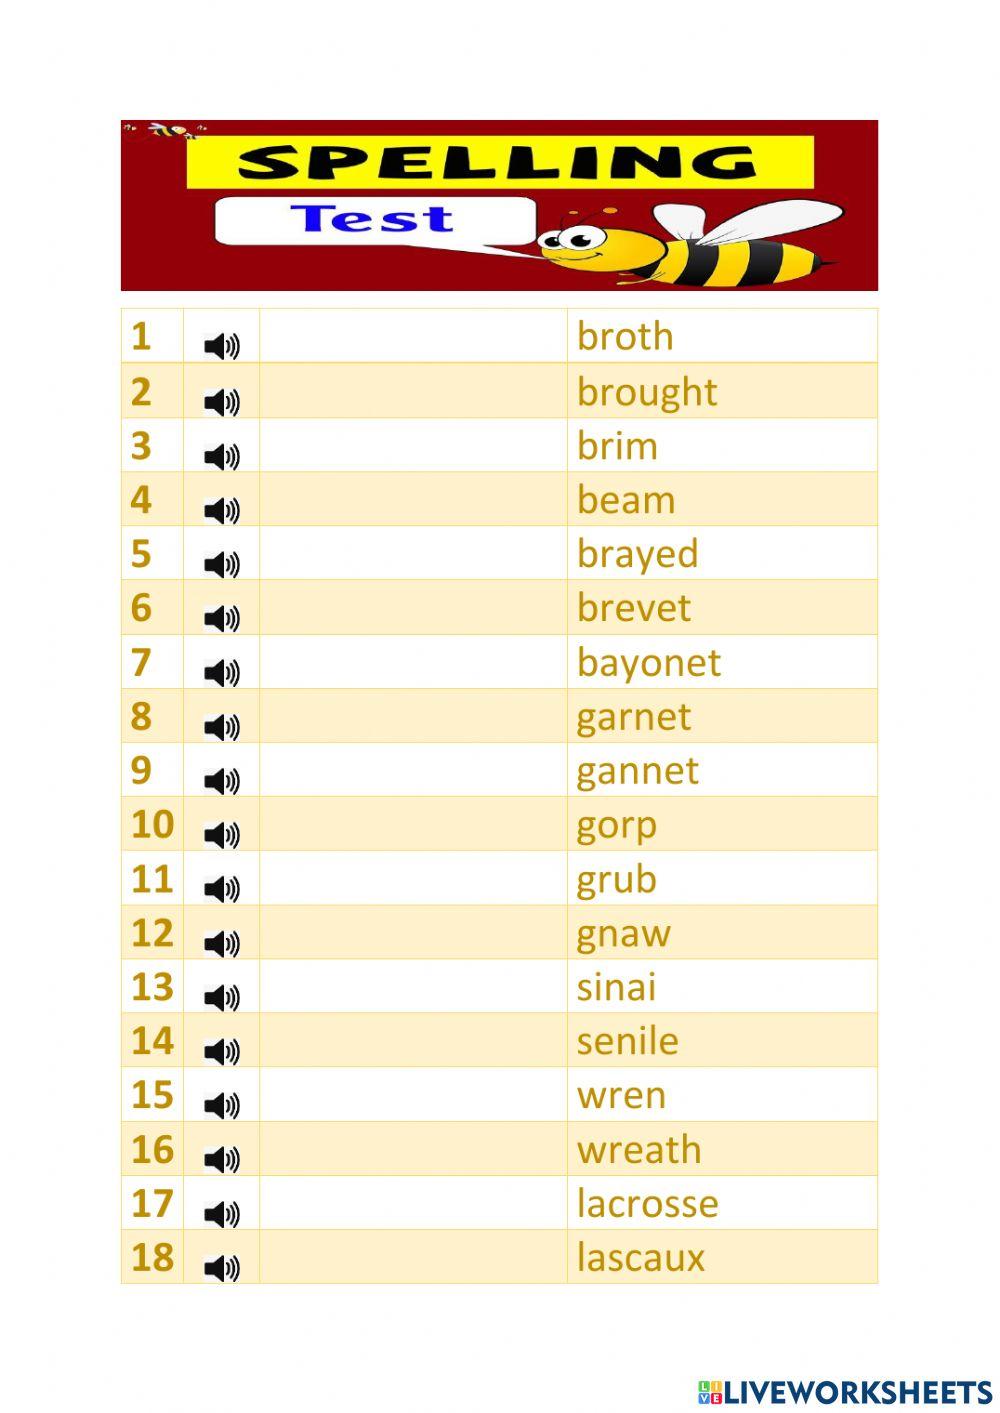 Spelling bee (W-Y)